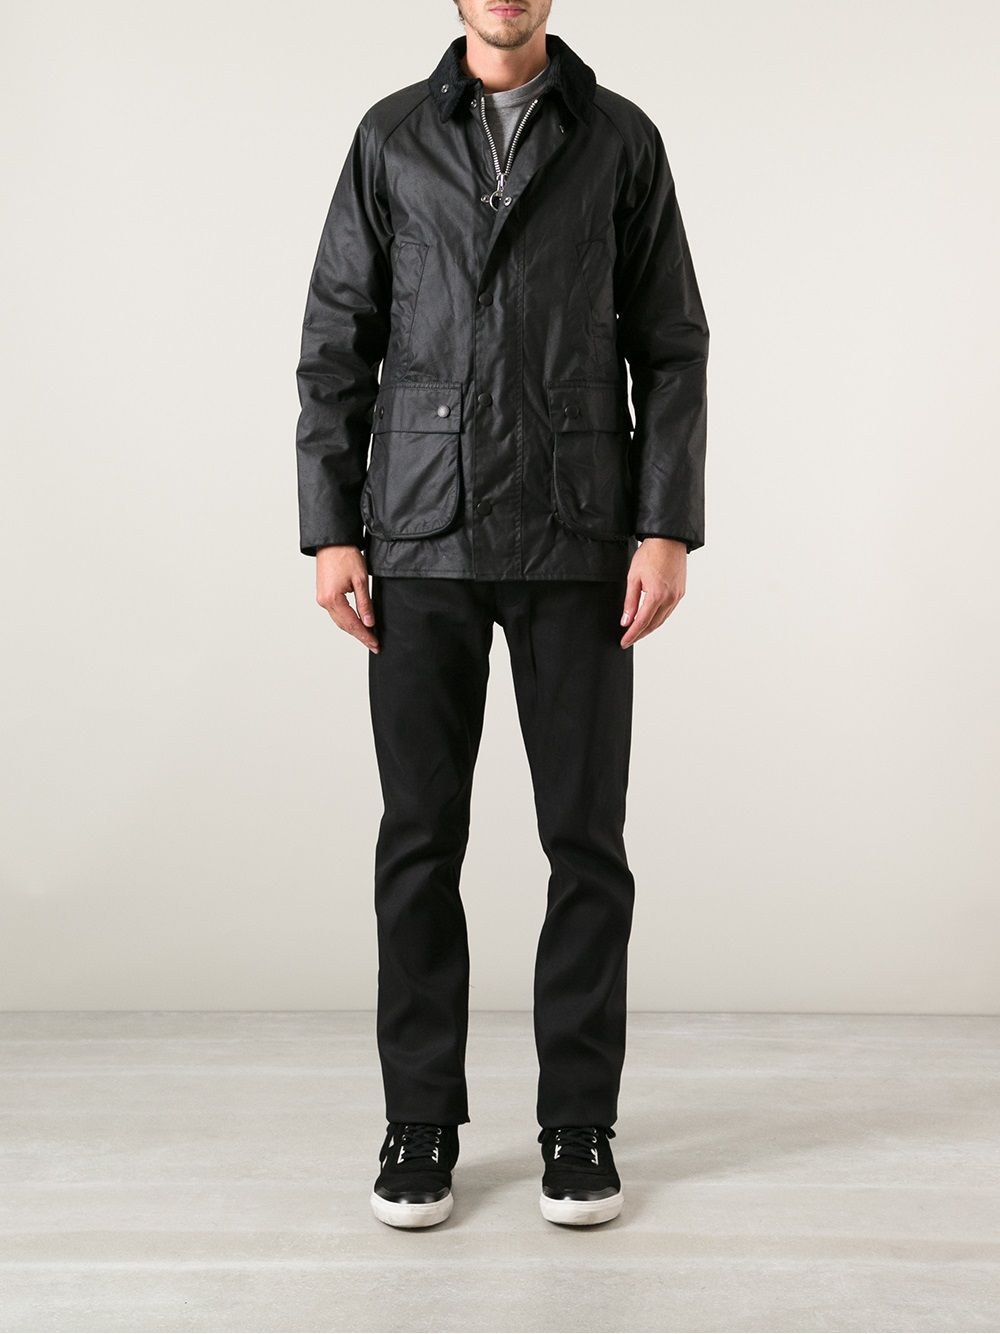 Barbour Sl Bedale Jacket in Black for Men - Lyst